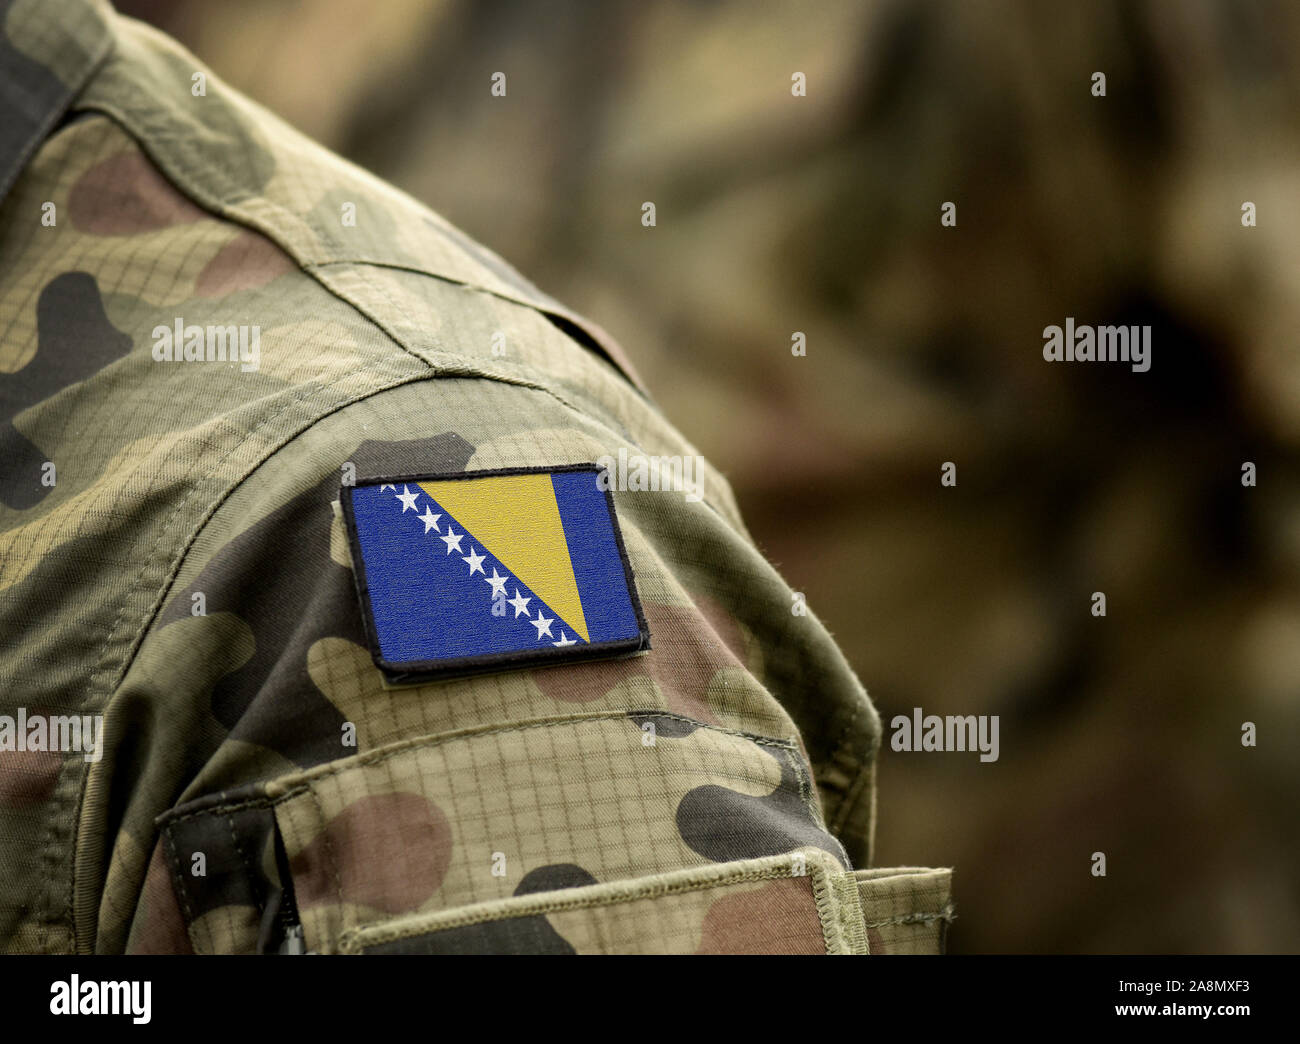 Flagge von Bosnien und Herzegowina auf der Uniform. Armee, Soldaten, Soldaten. Collage. Stockfoto